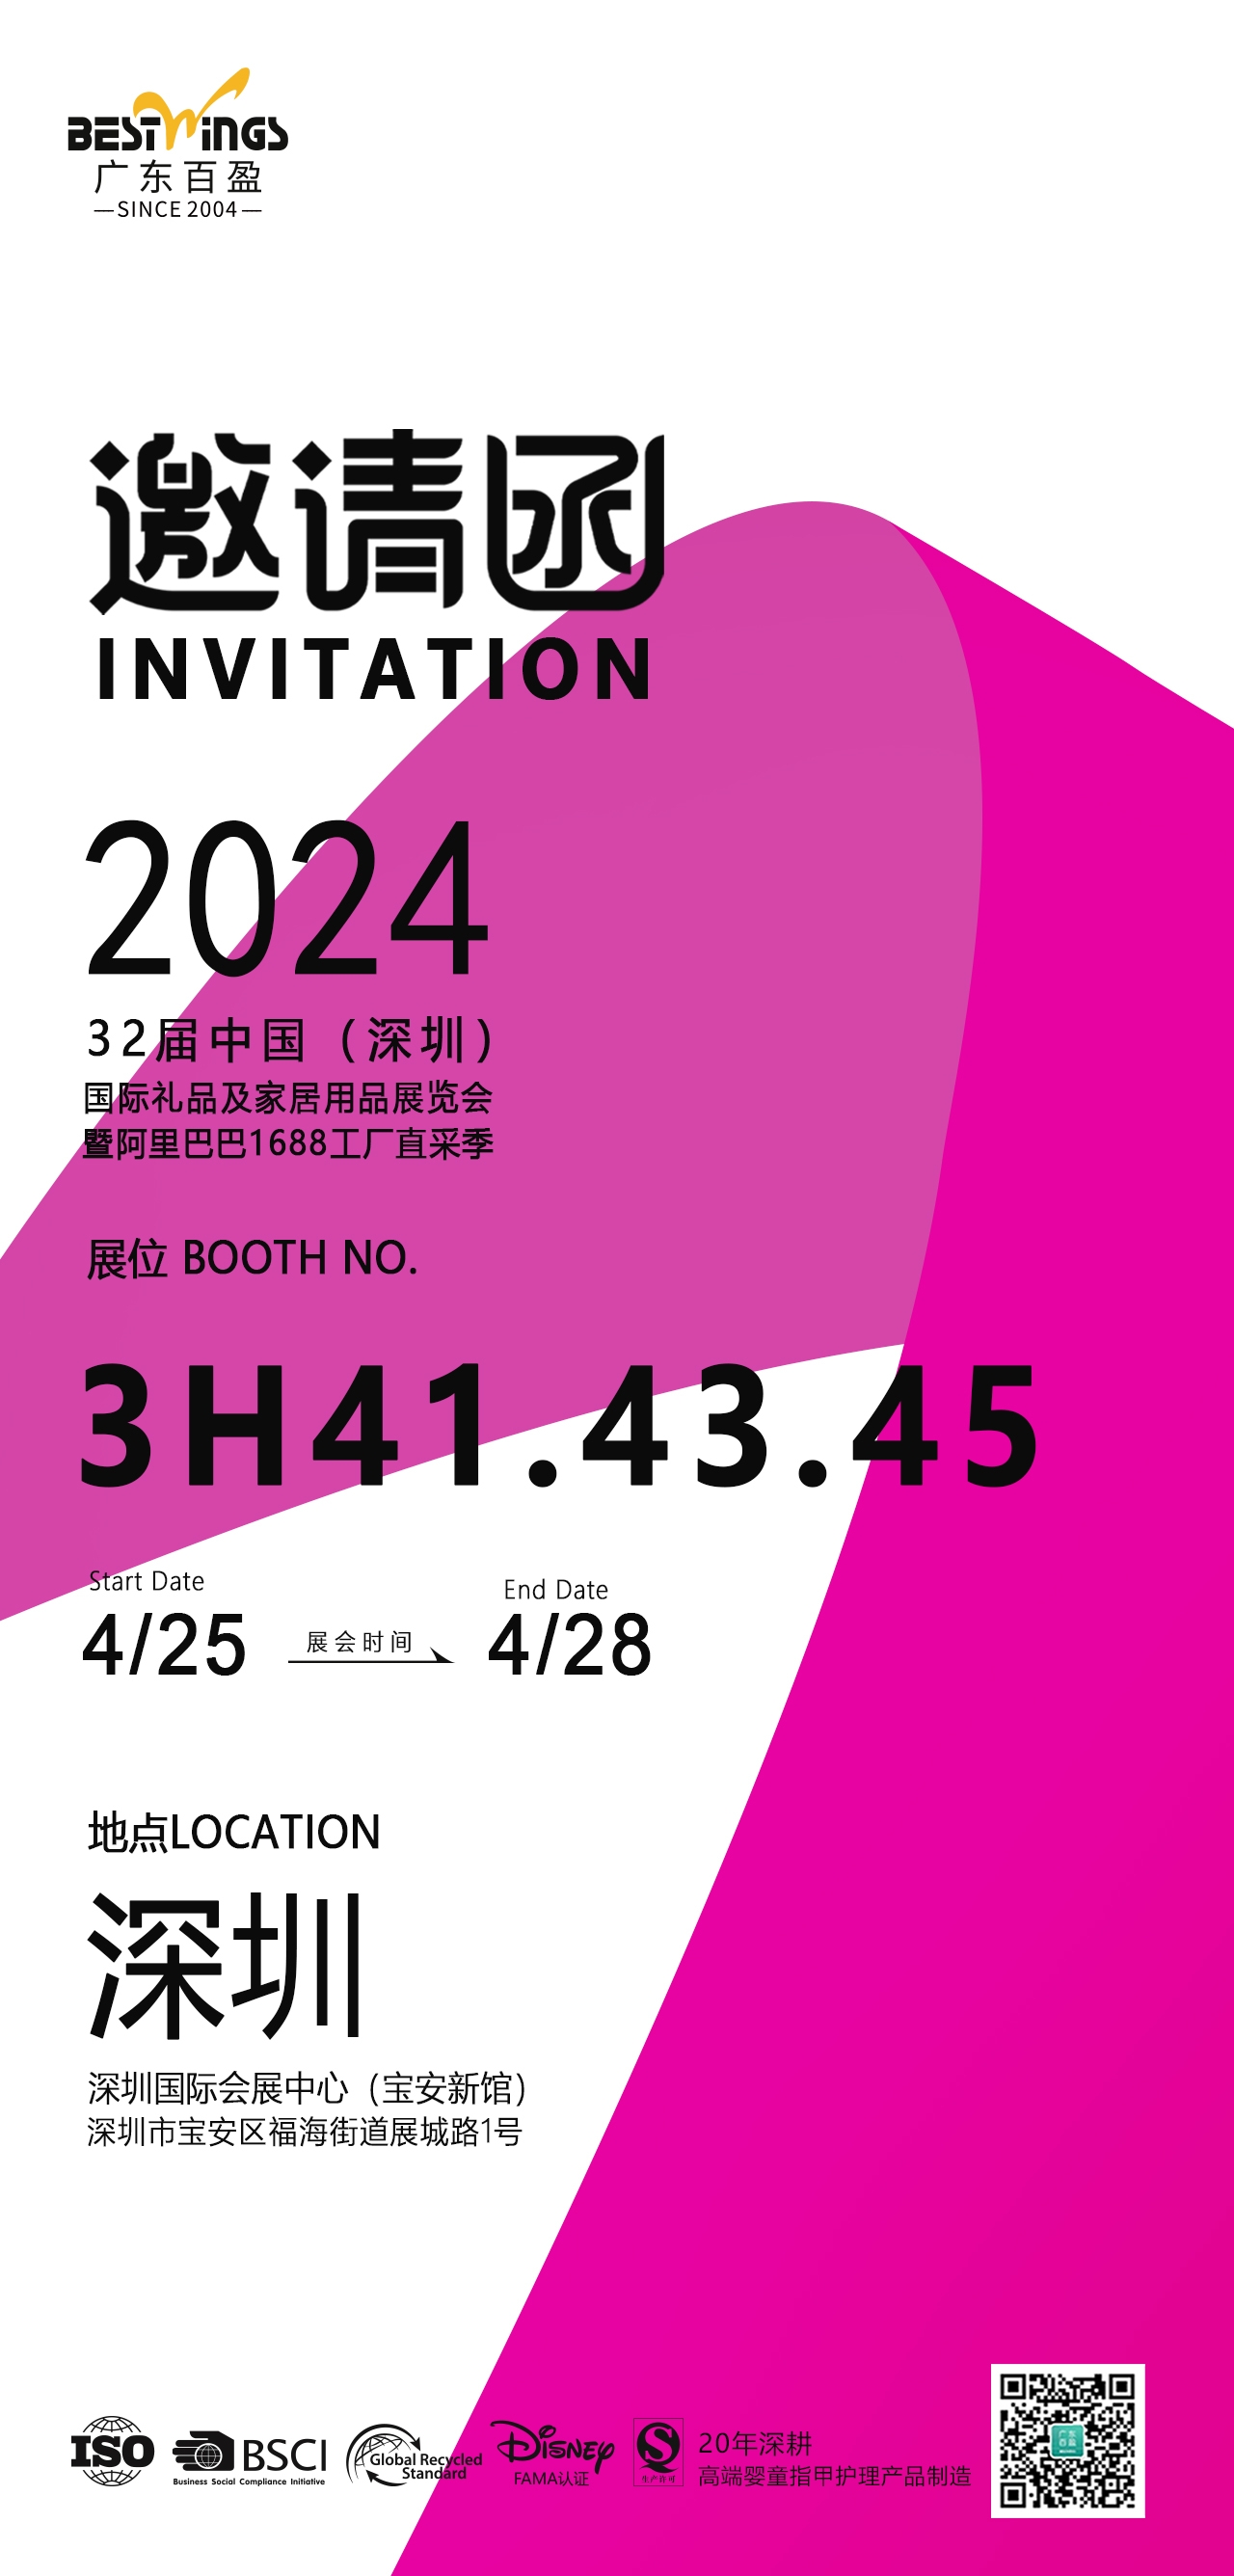 Shenzhen gift show invitation